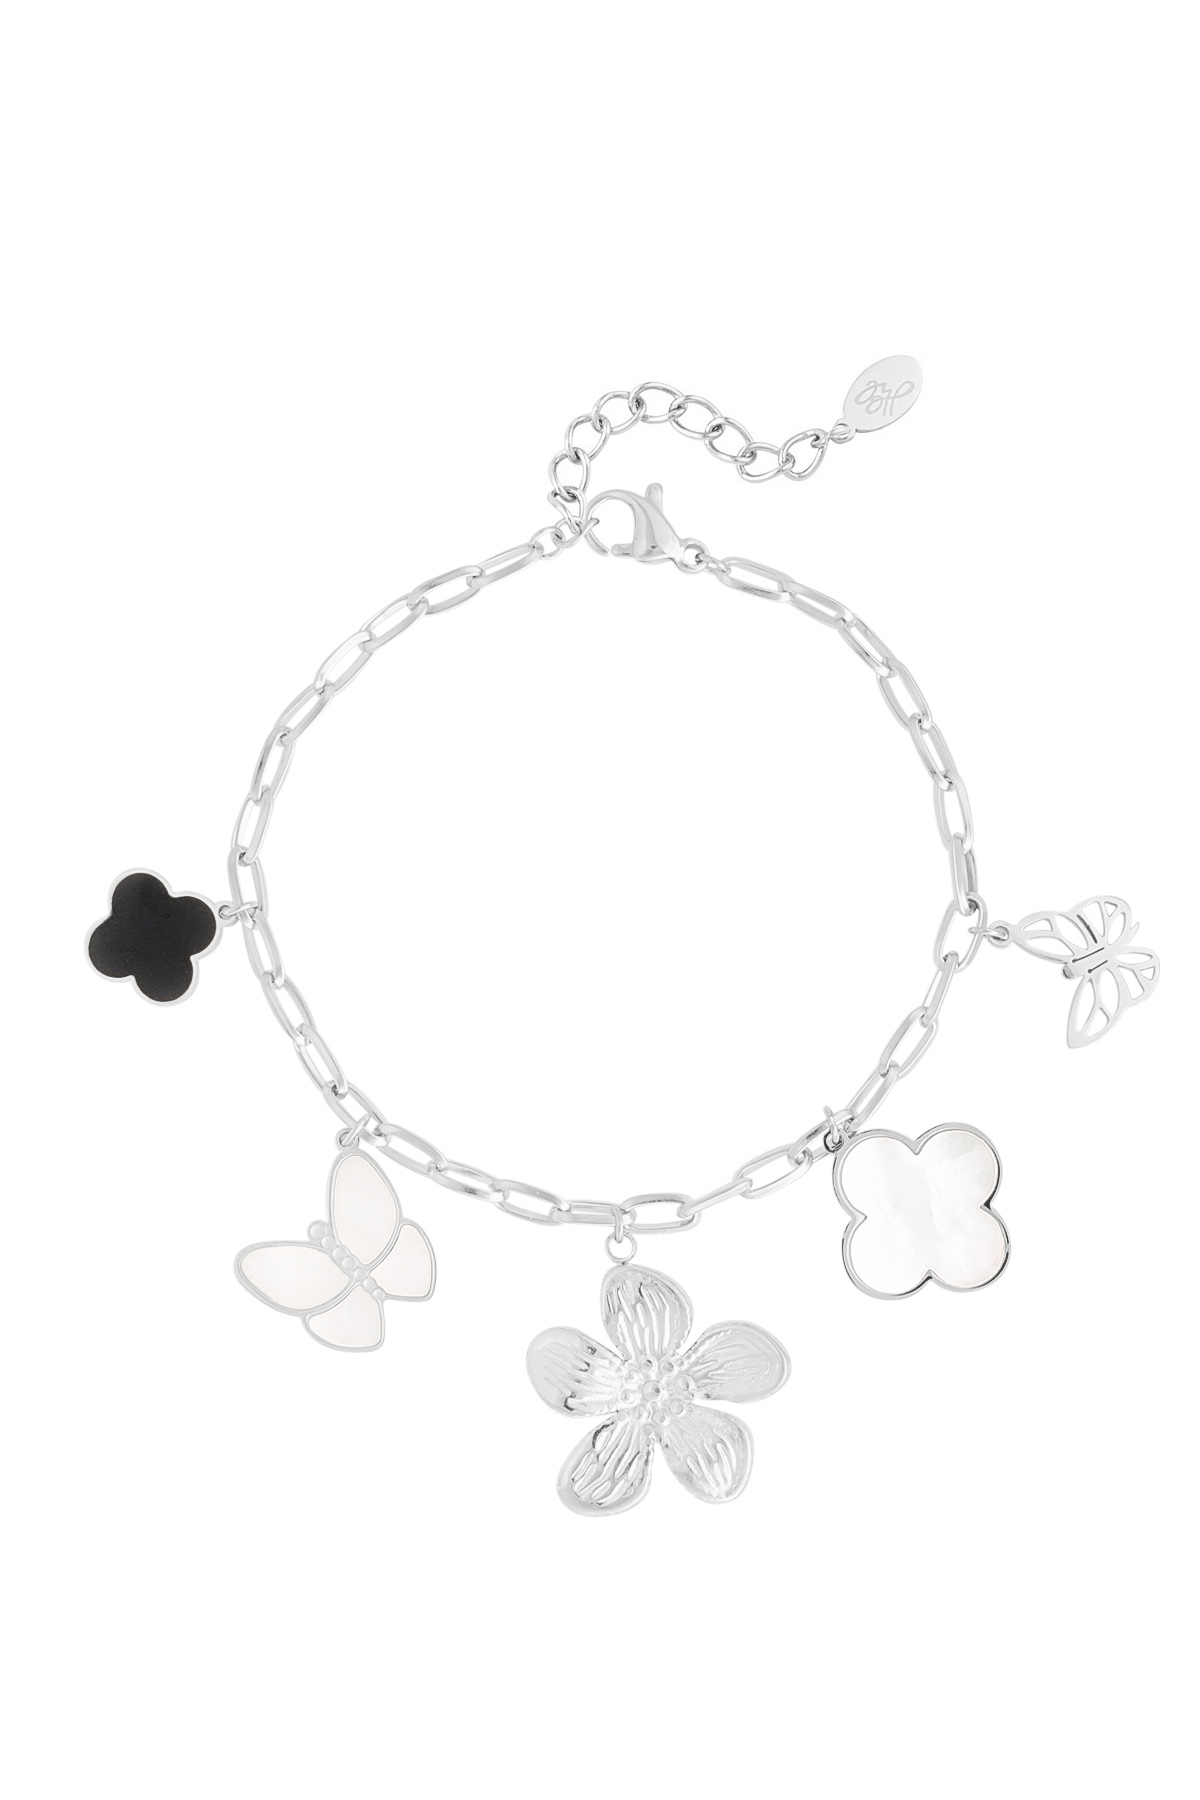 Bracelet charm enfant fleur - argent